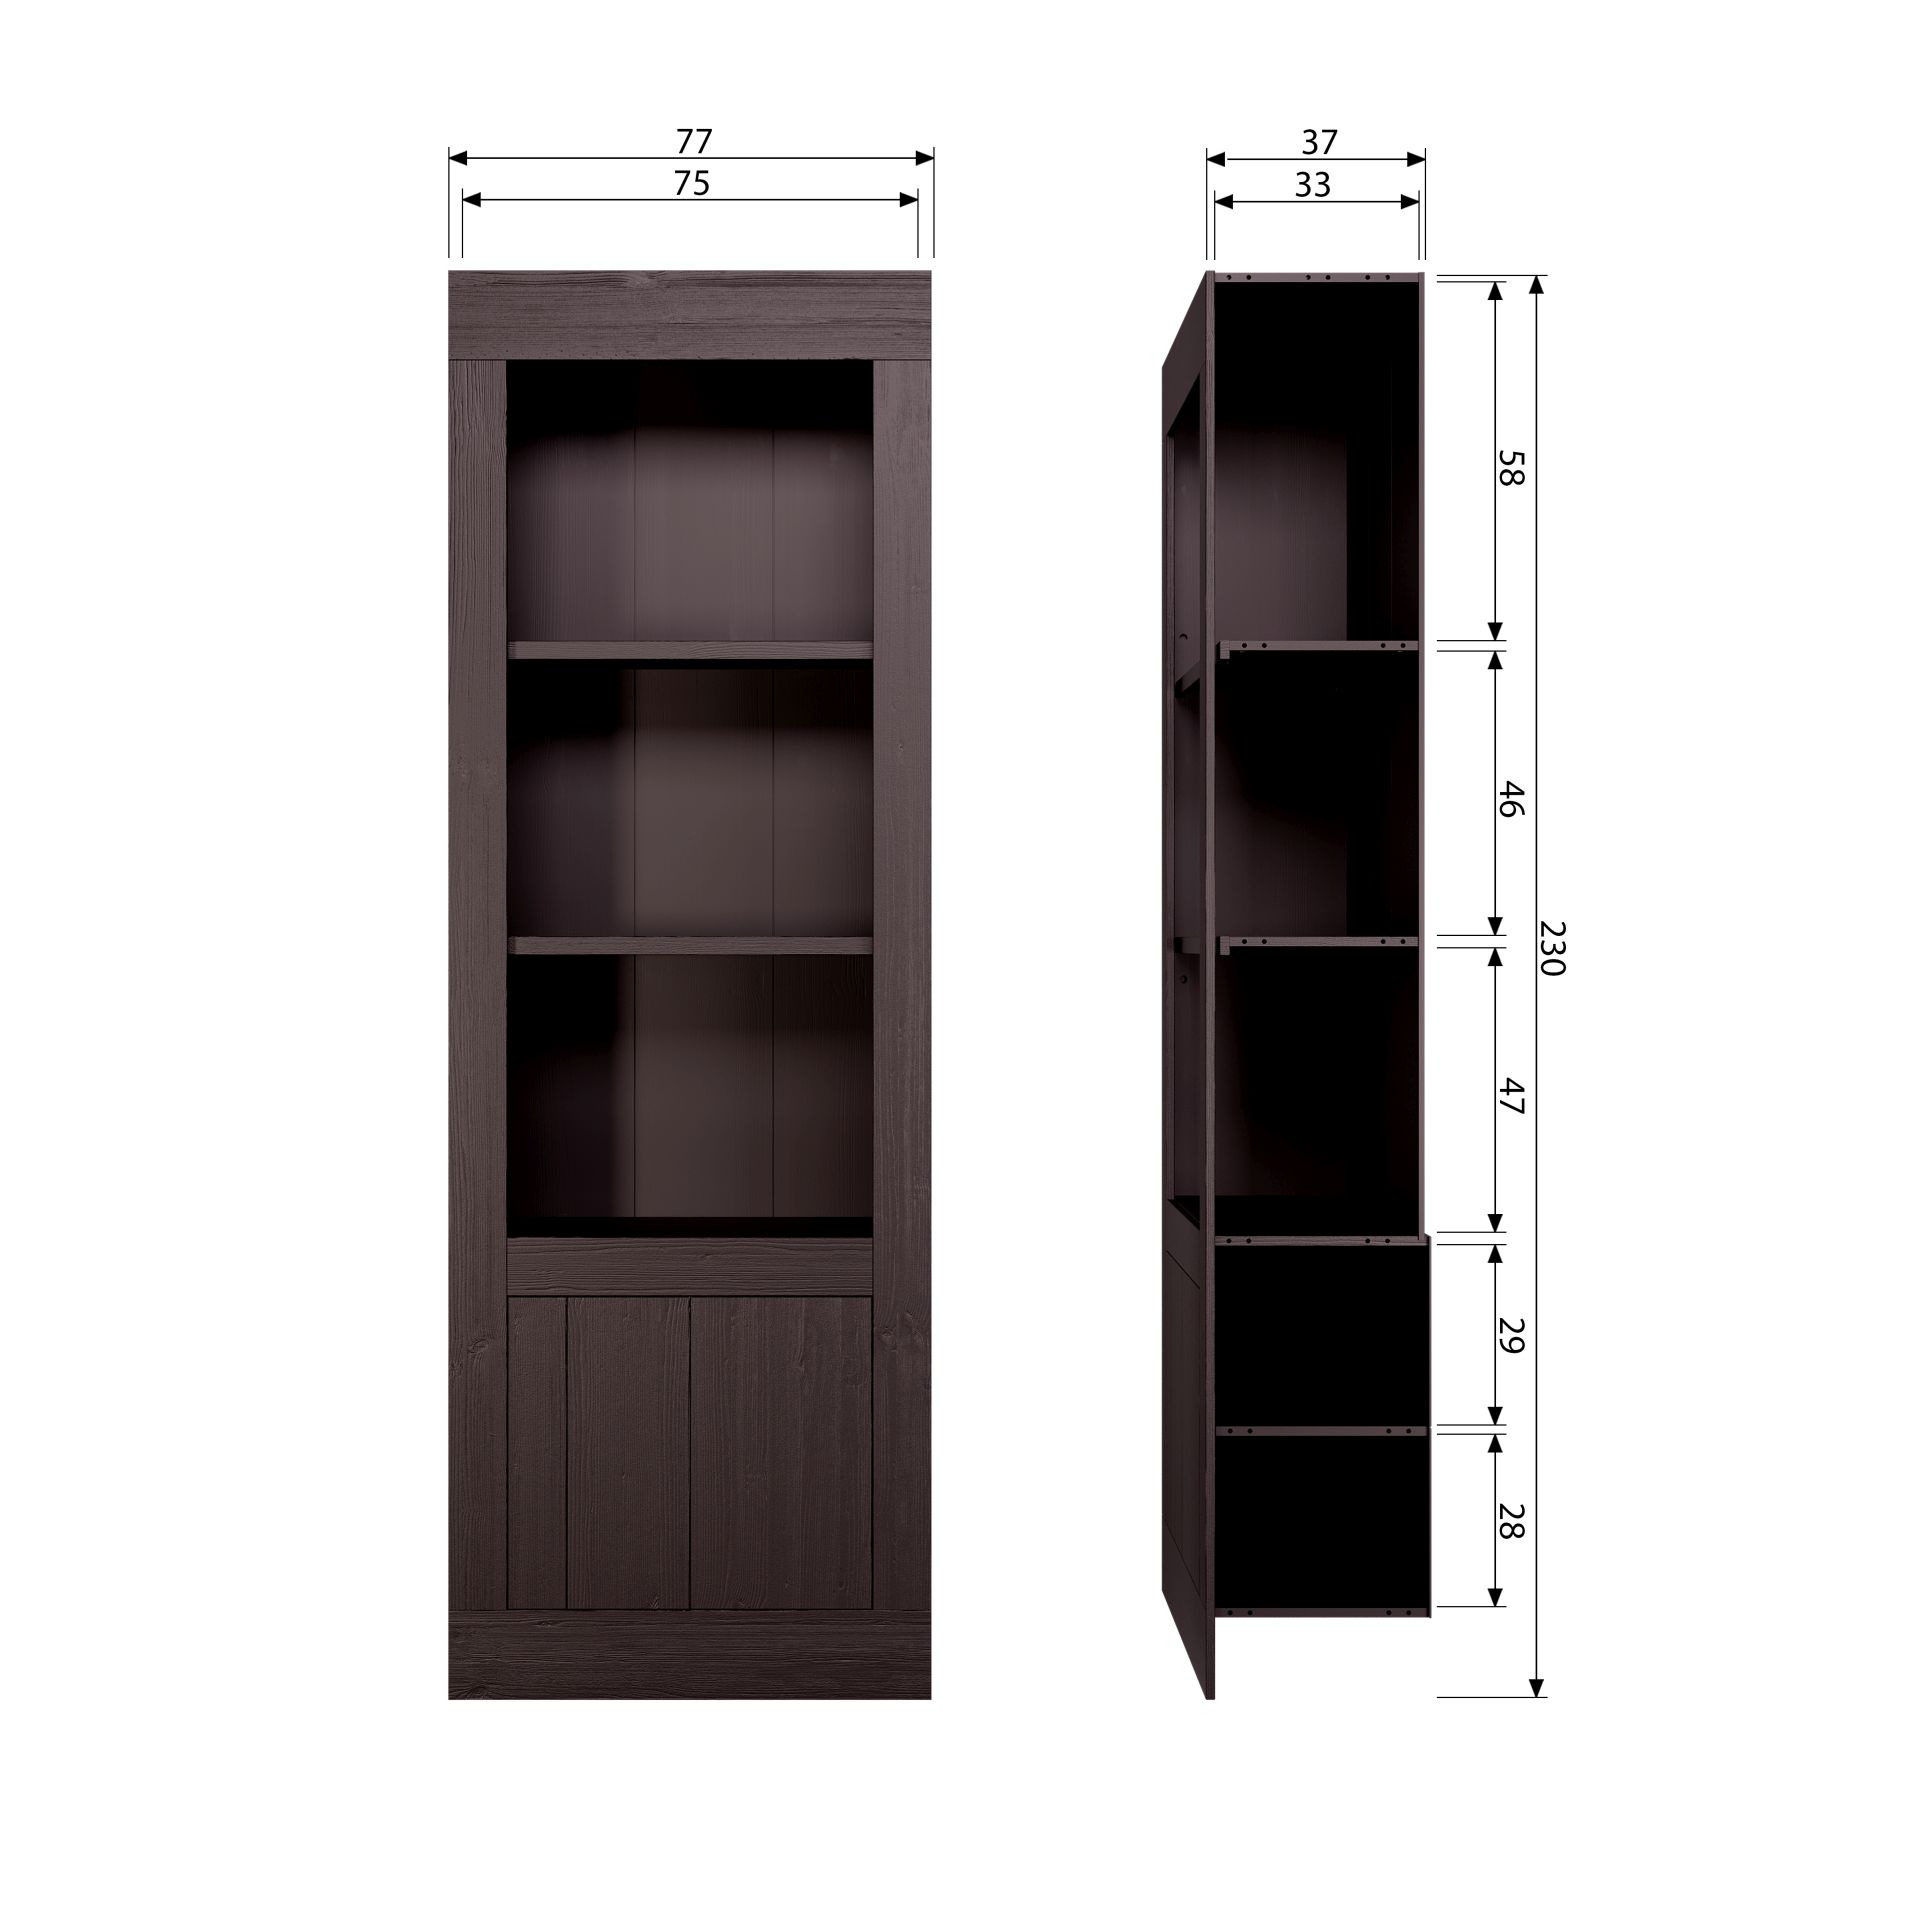 Das Bücherregal Yumi überzeugt mit seinem modernem Design. Gefertigt wurde es aus Kiefernholz, welches einen dunkelbraunen Farbton besitzt. Das Regal verfügt über eine Tür und drei Fächer. Die Breite beträgt 78 cm.